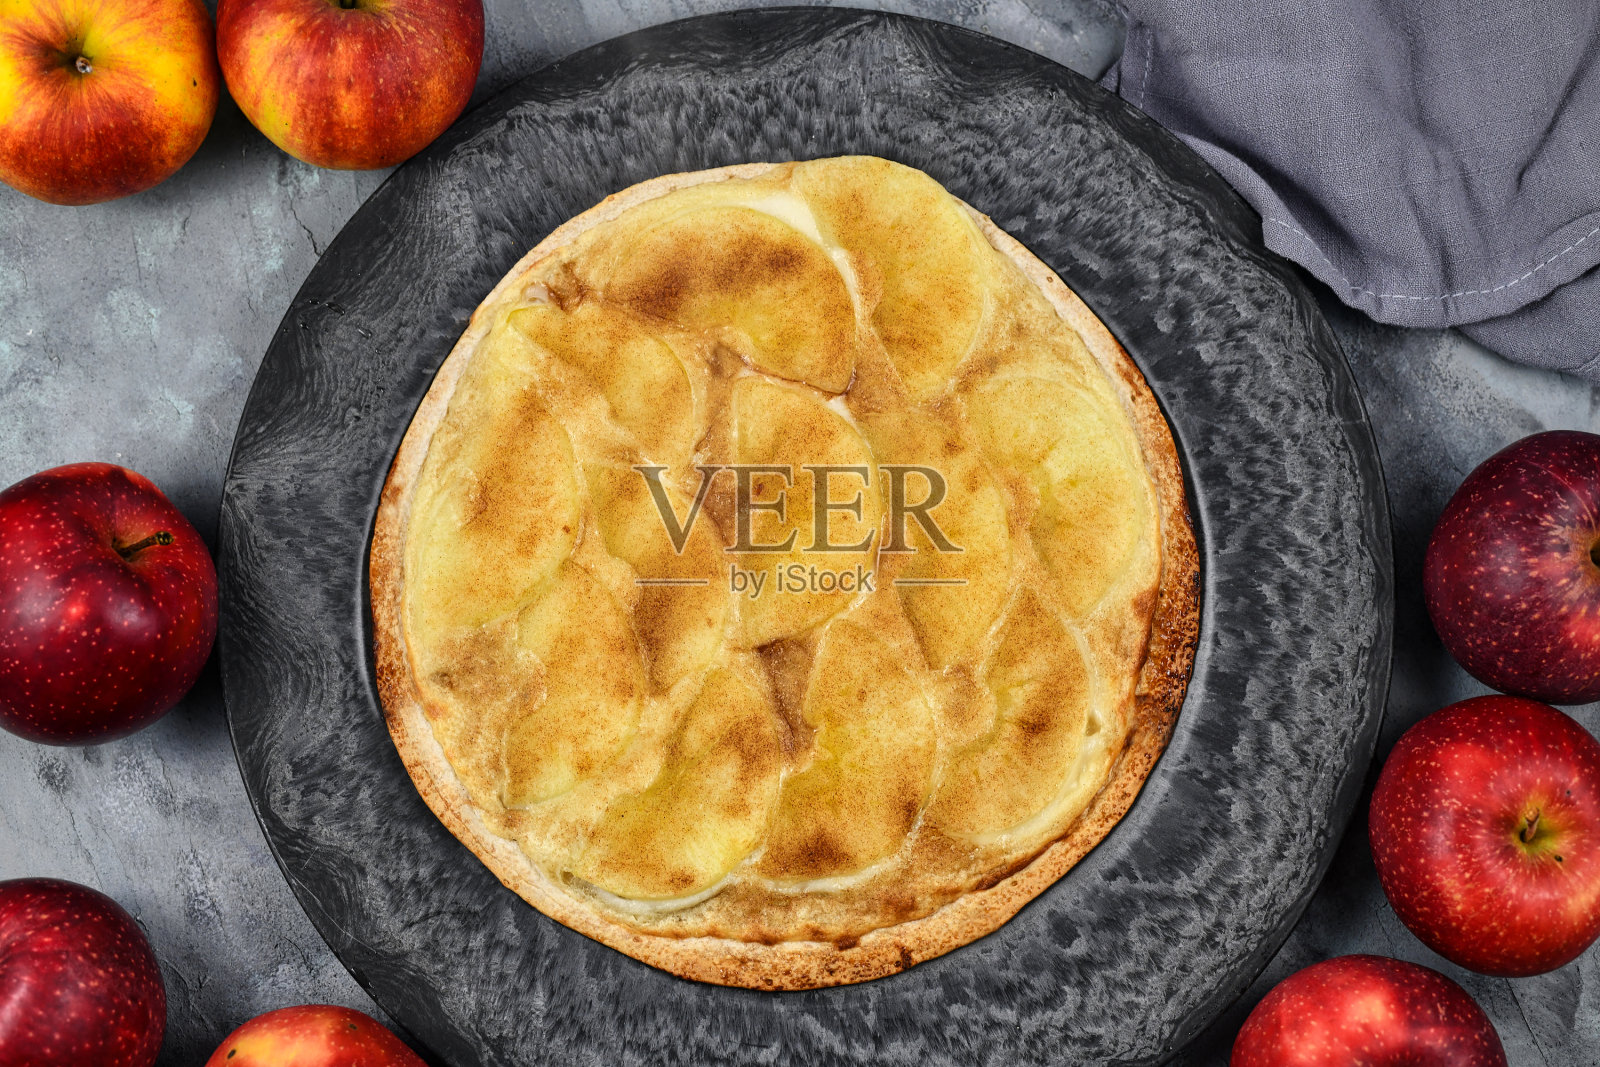 来自德法接壤的阿尔萨斯地区的“火馅饼”或“火馅饼”，类似于薄披萨，上面覆盖了苹果片、糖和肉桂照片摄影图片